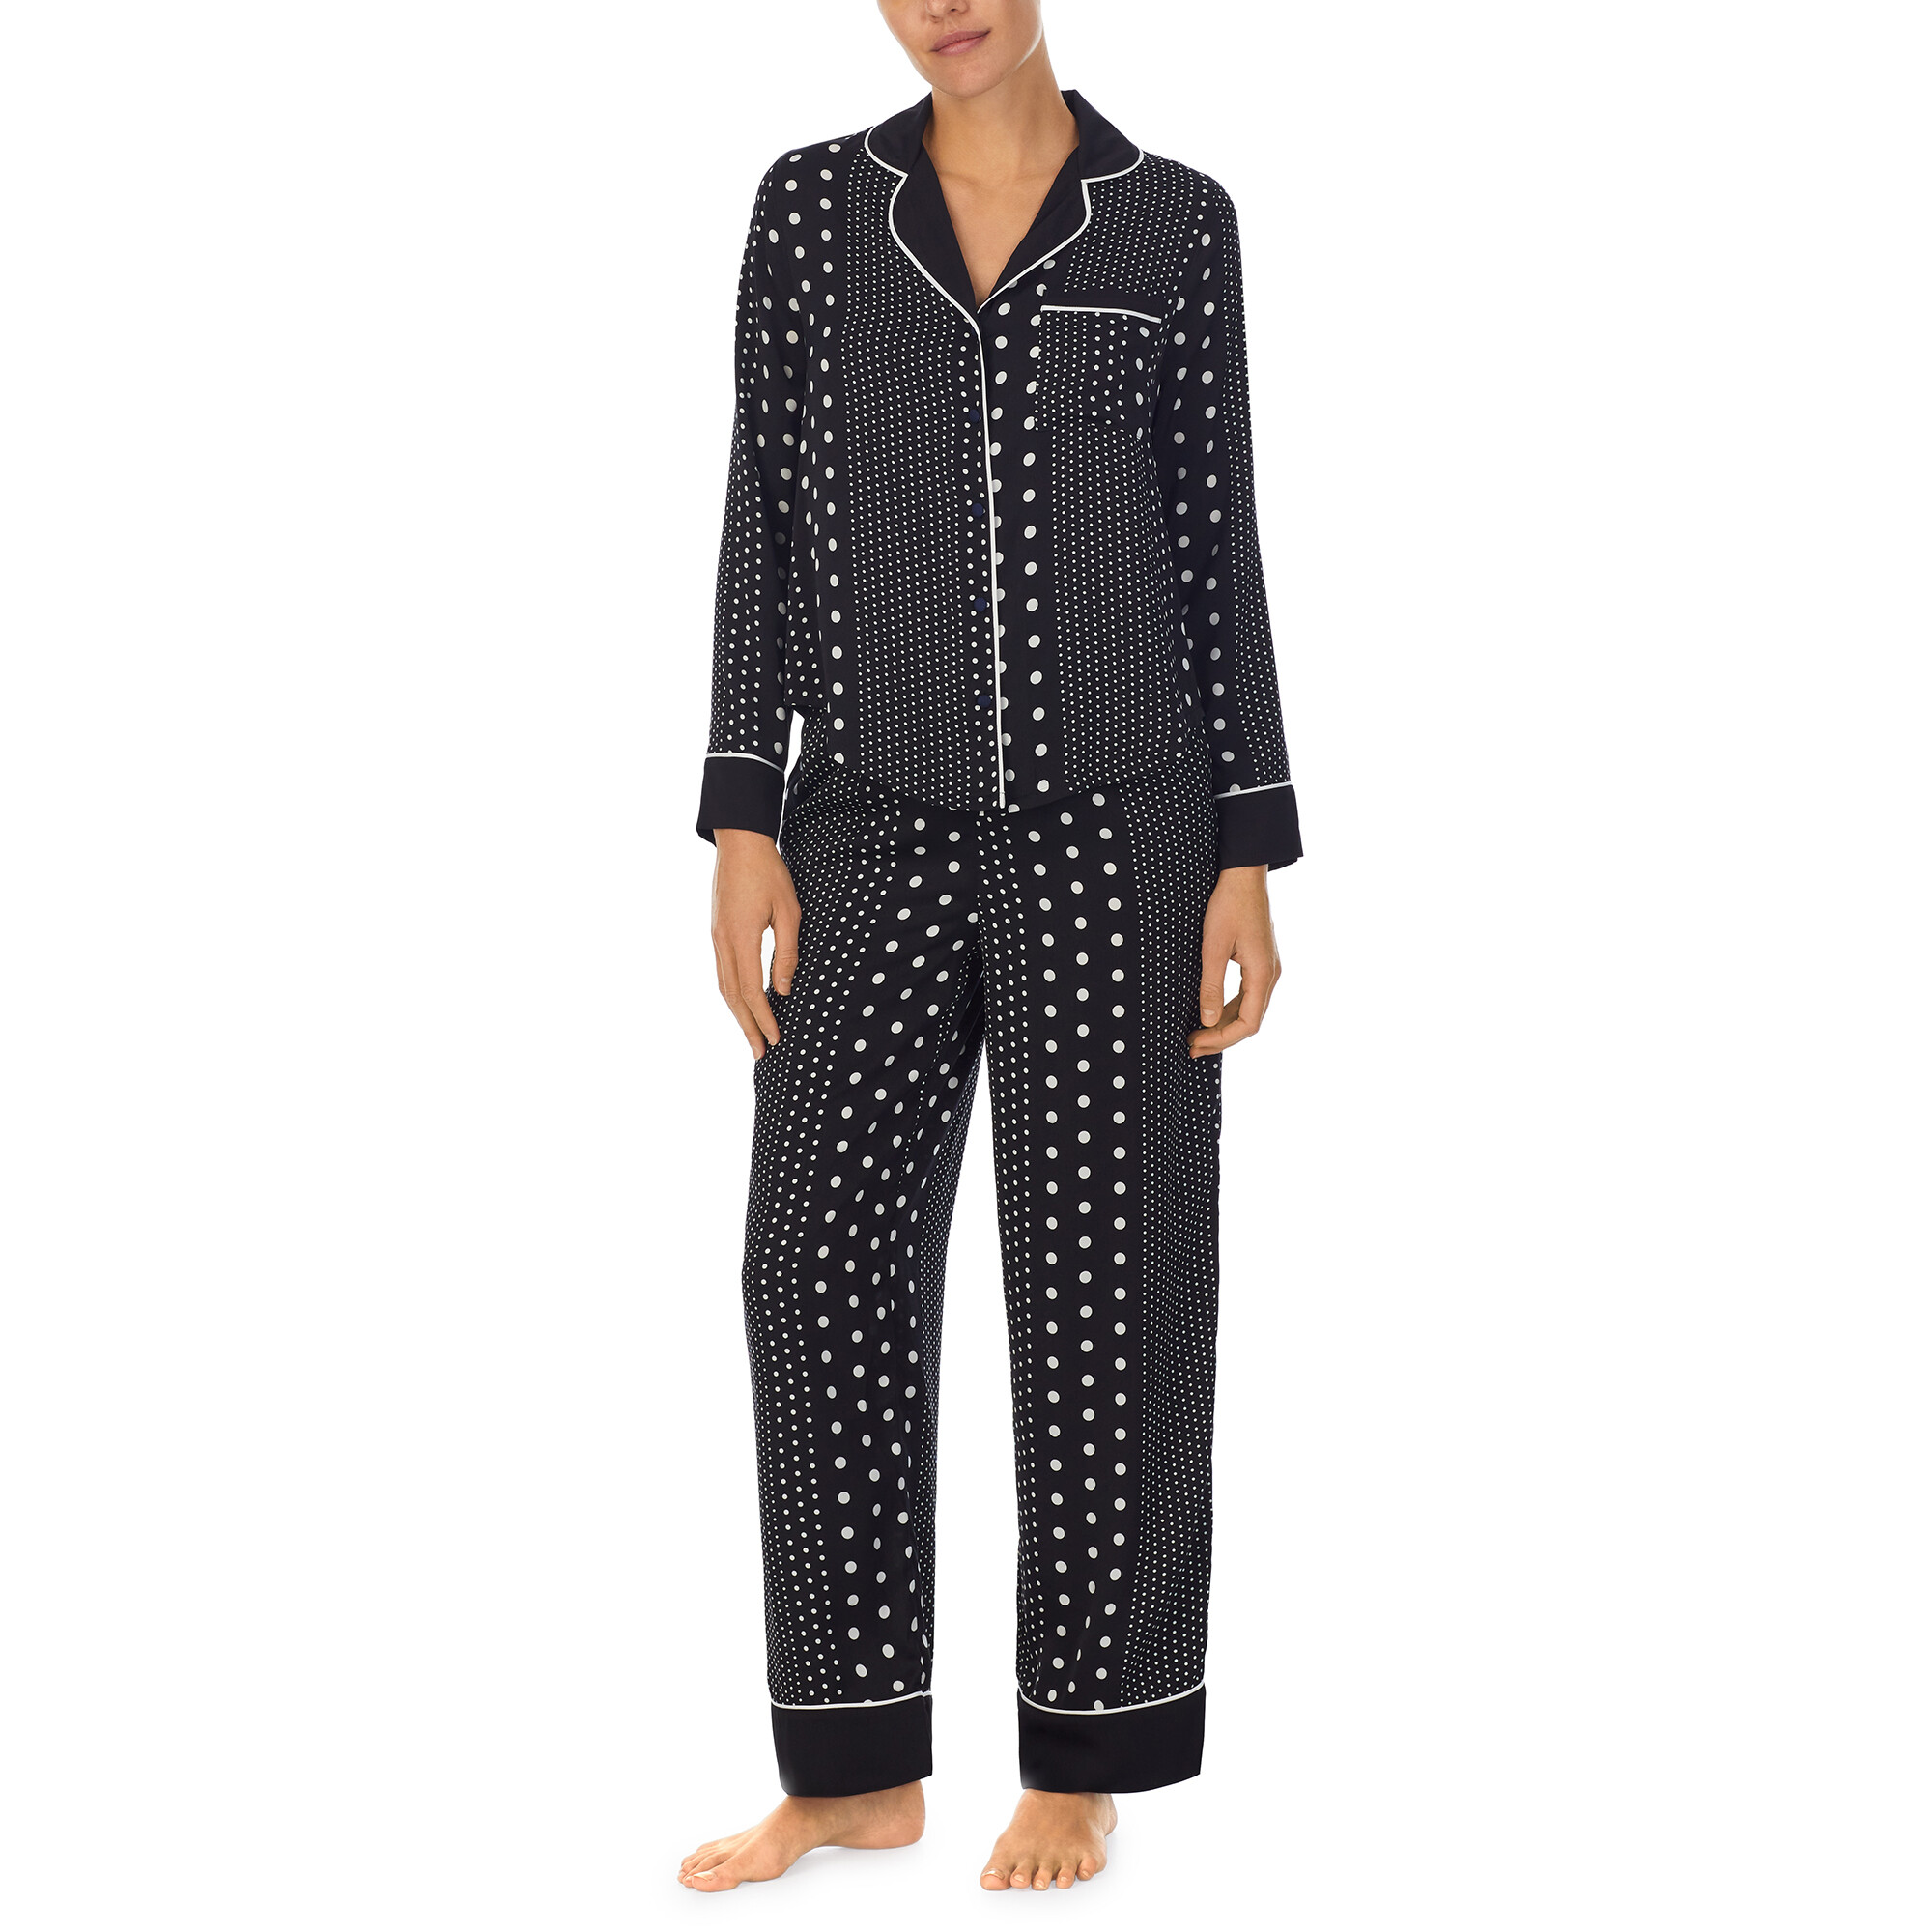 Imbracaminte Femei Kate Spade New York Long Sleeve Pajama Black Stripe